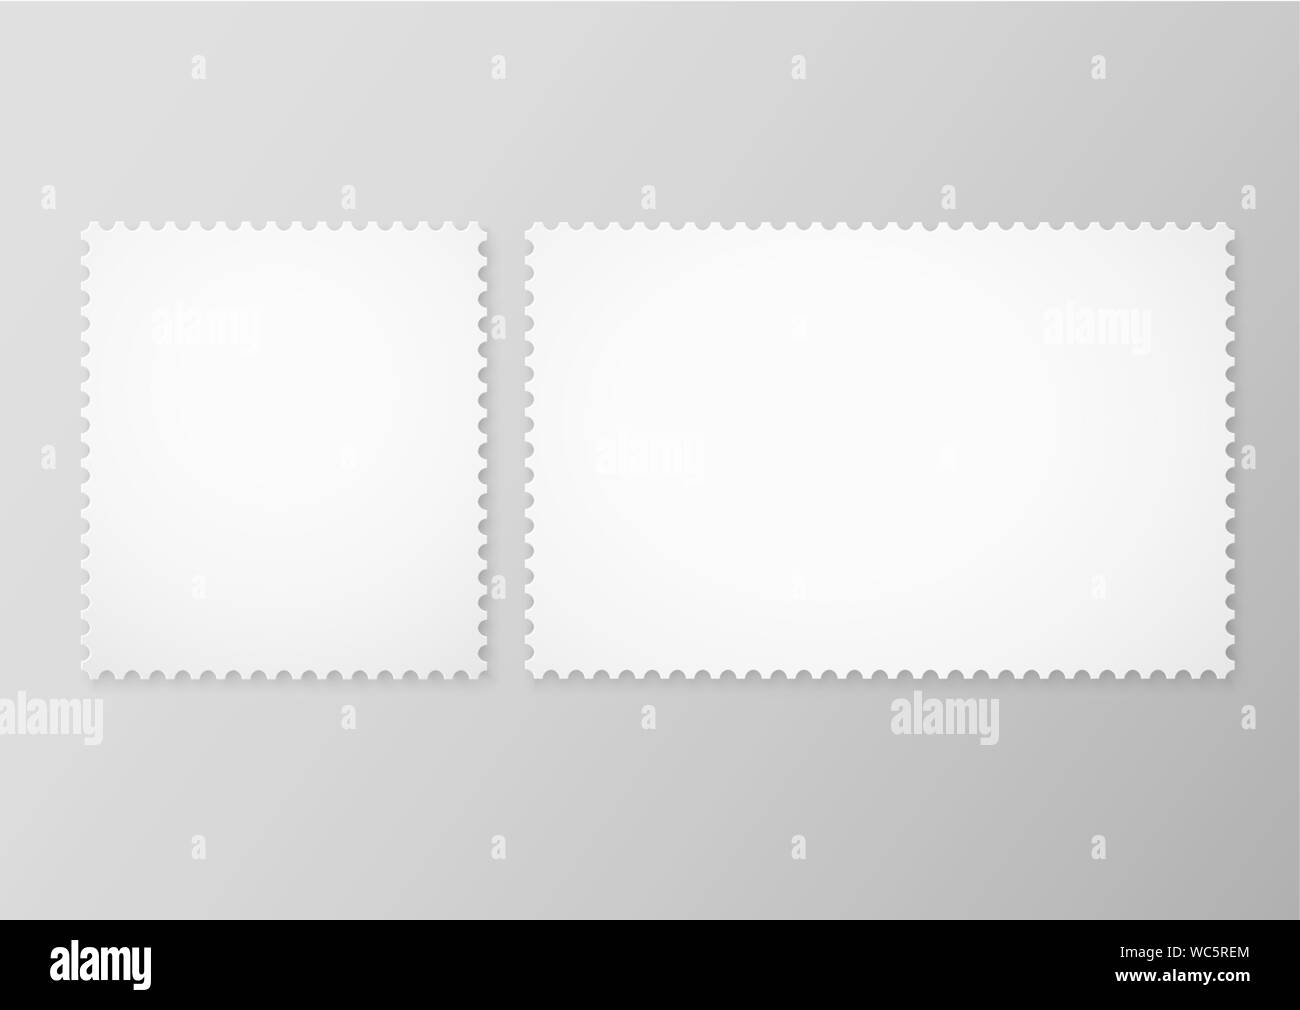 Vektor einrichten von leeren Briefmarken auf grauem Hintergrund. Leer Briefmarken frames. Vector EPS 10. Stock Vektor